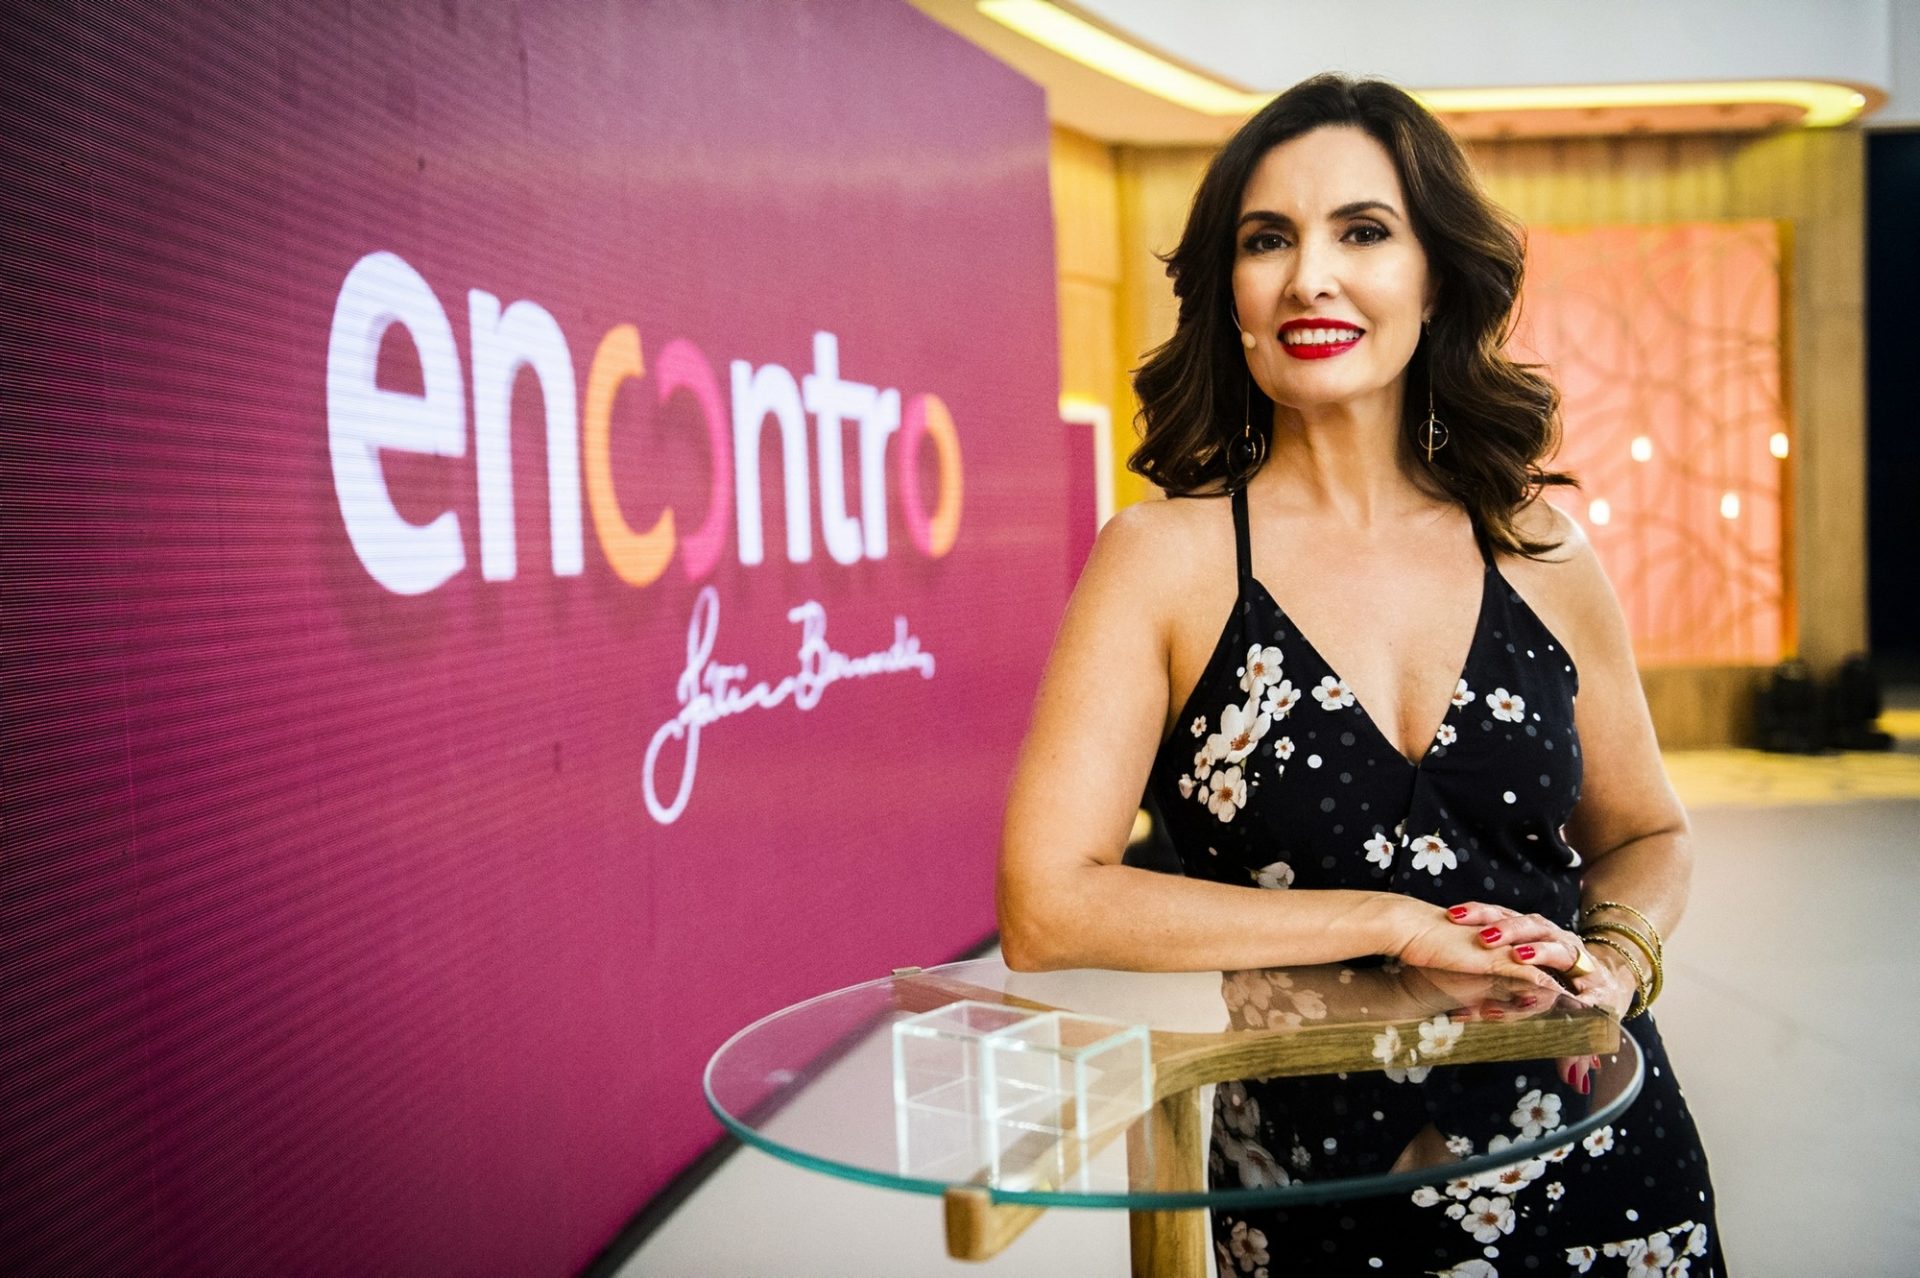 Jornalista ganhou seu próprio programa de entretenimento (Reprodução/TV Globo)